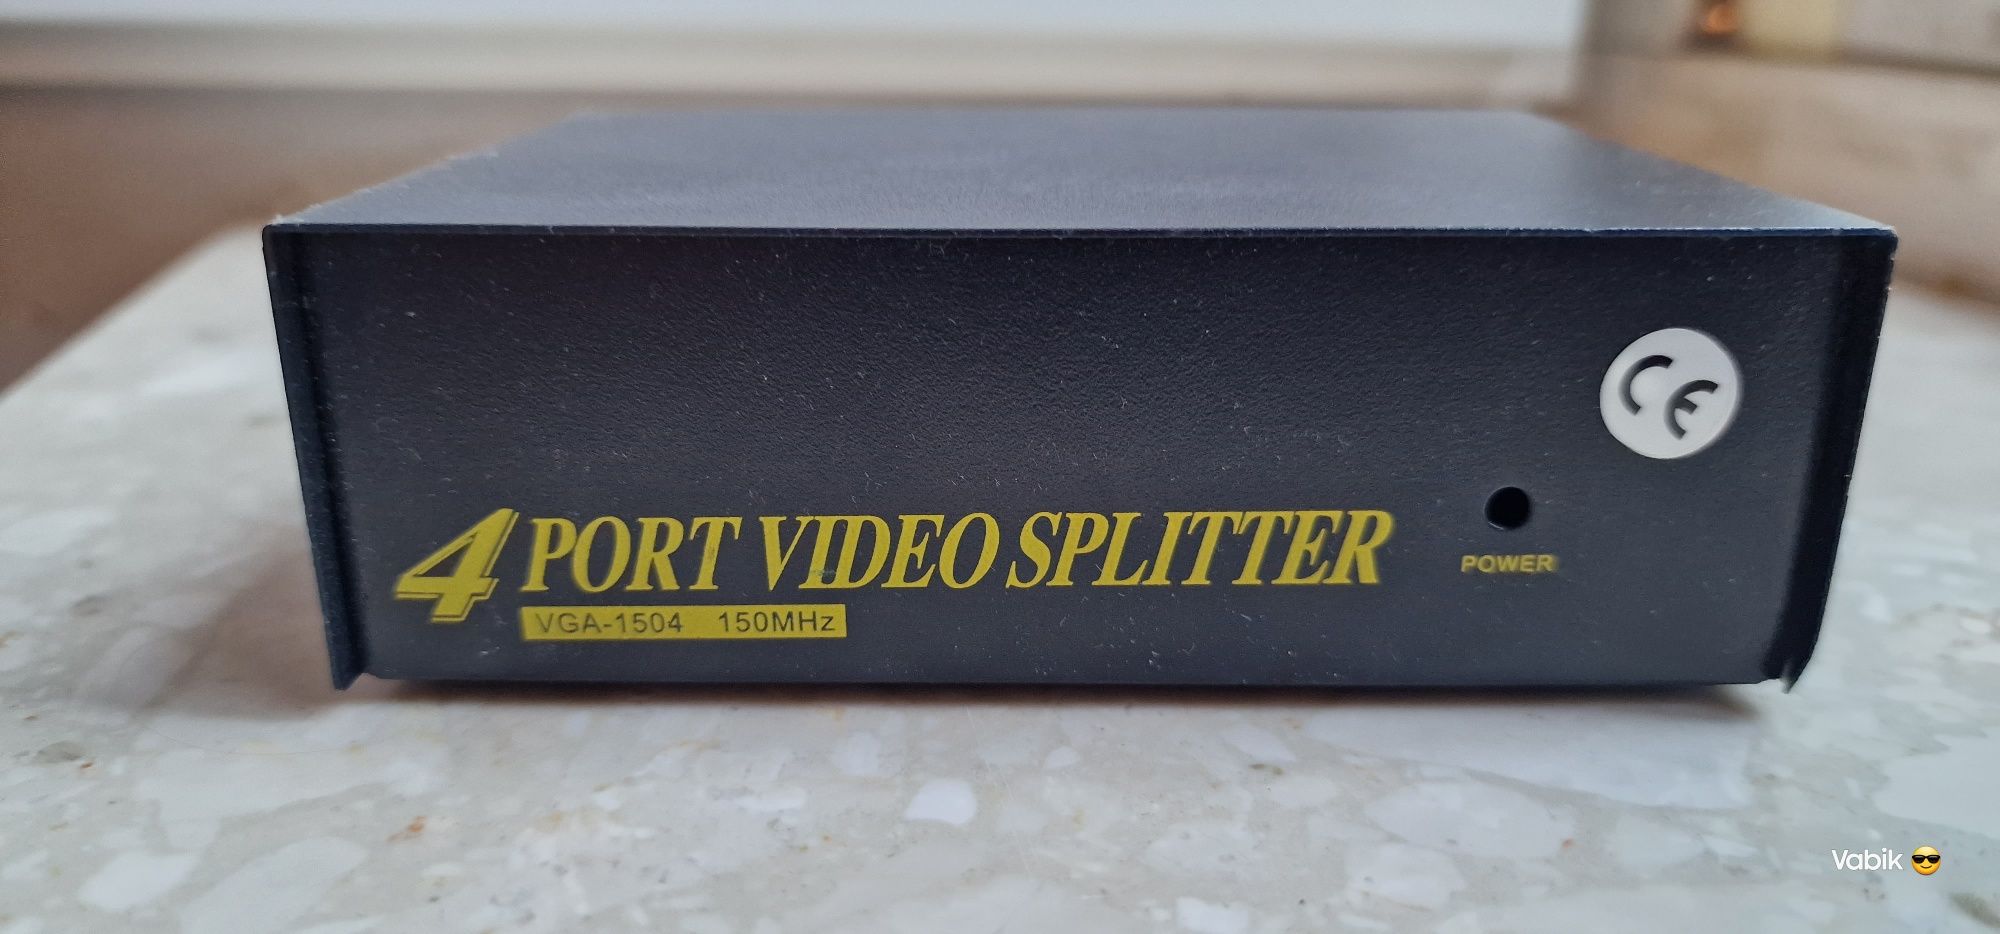 4 port video splitter